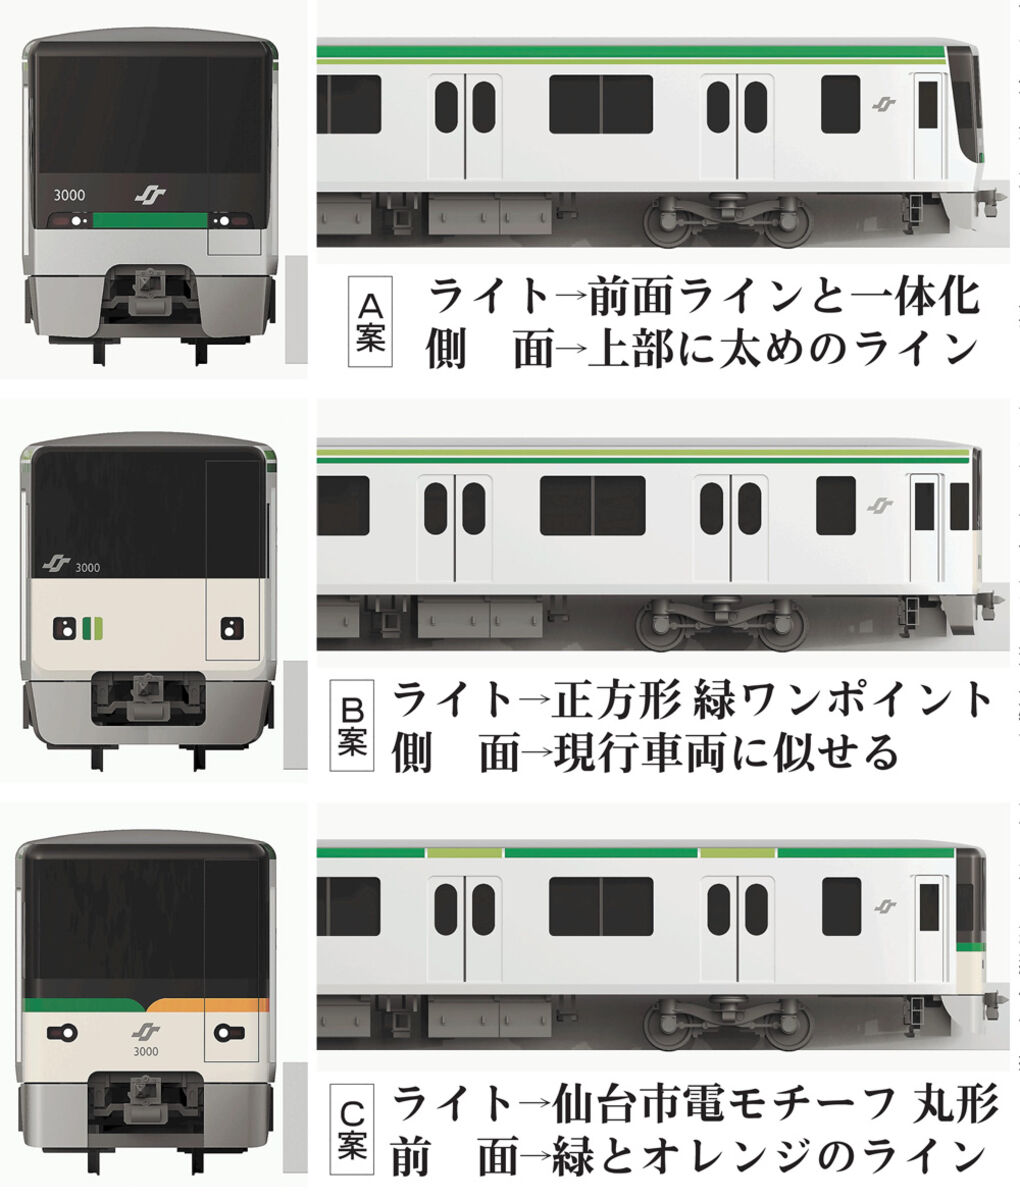 地下鉄南北線のデザイン ３案から選んで 仙台市 投票始める 河北新報オンラインニュース Online News